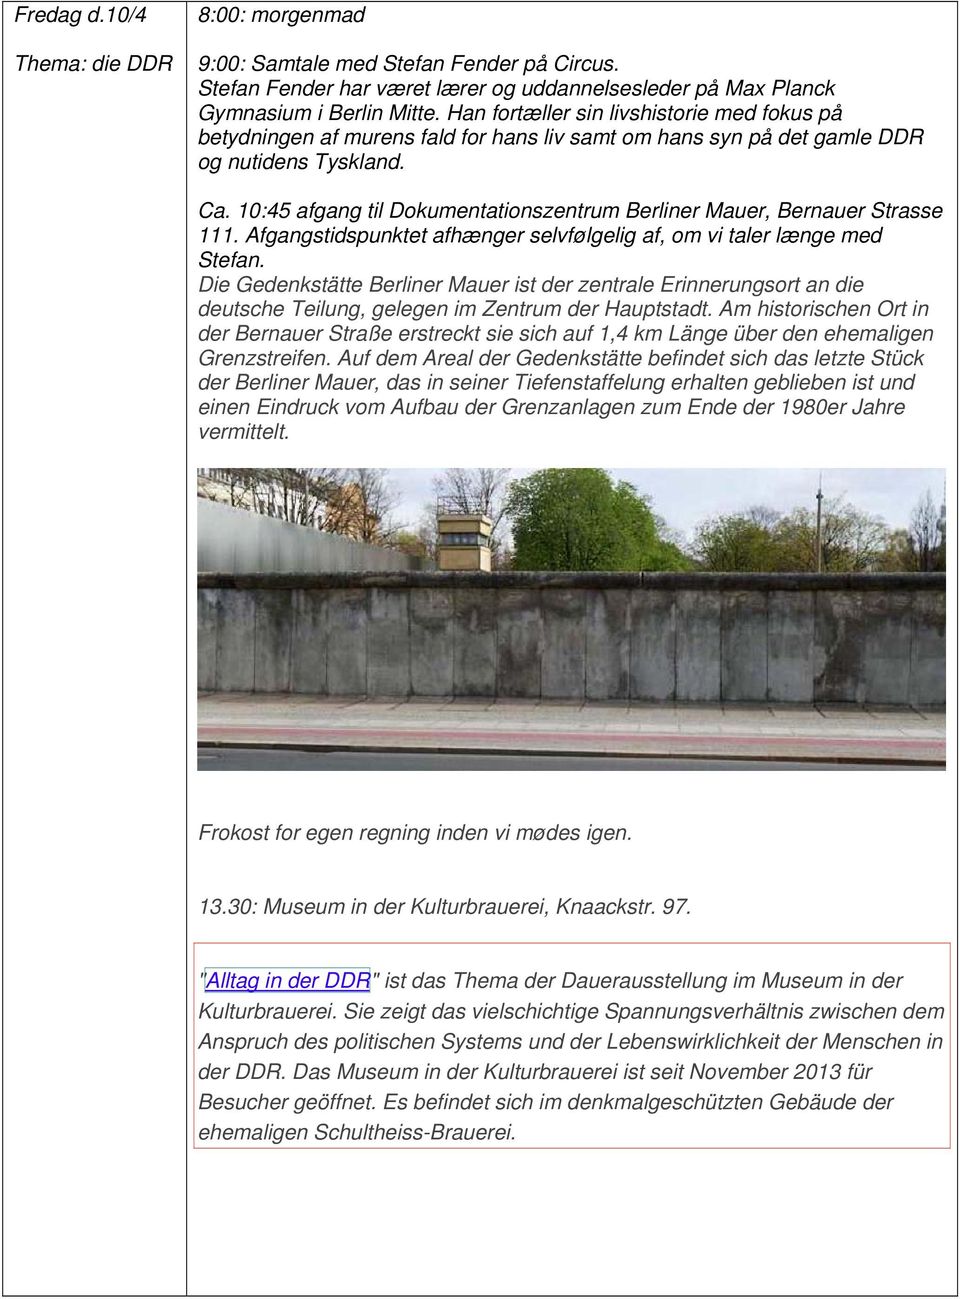 10:45 afgang til Dokumentationszentrum Berliner Mauer, Bernauer Strasse 111. Afgangstidspunktet afhænger selvfølgelig af, om vi taler længe med Stefan.